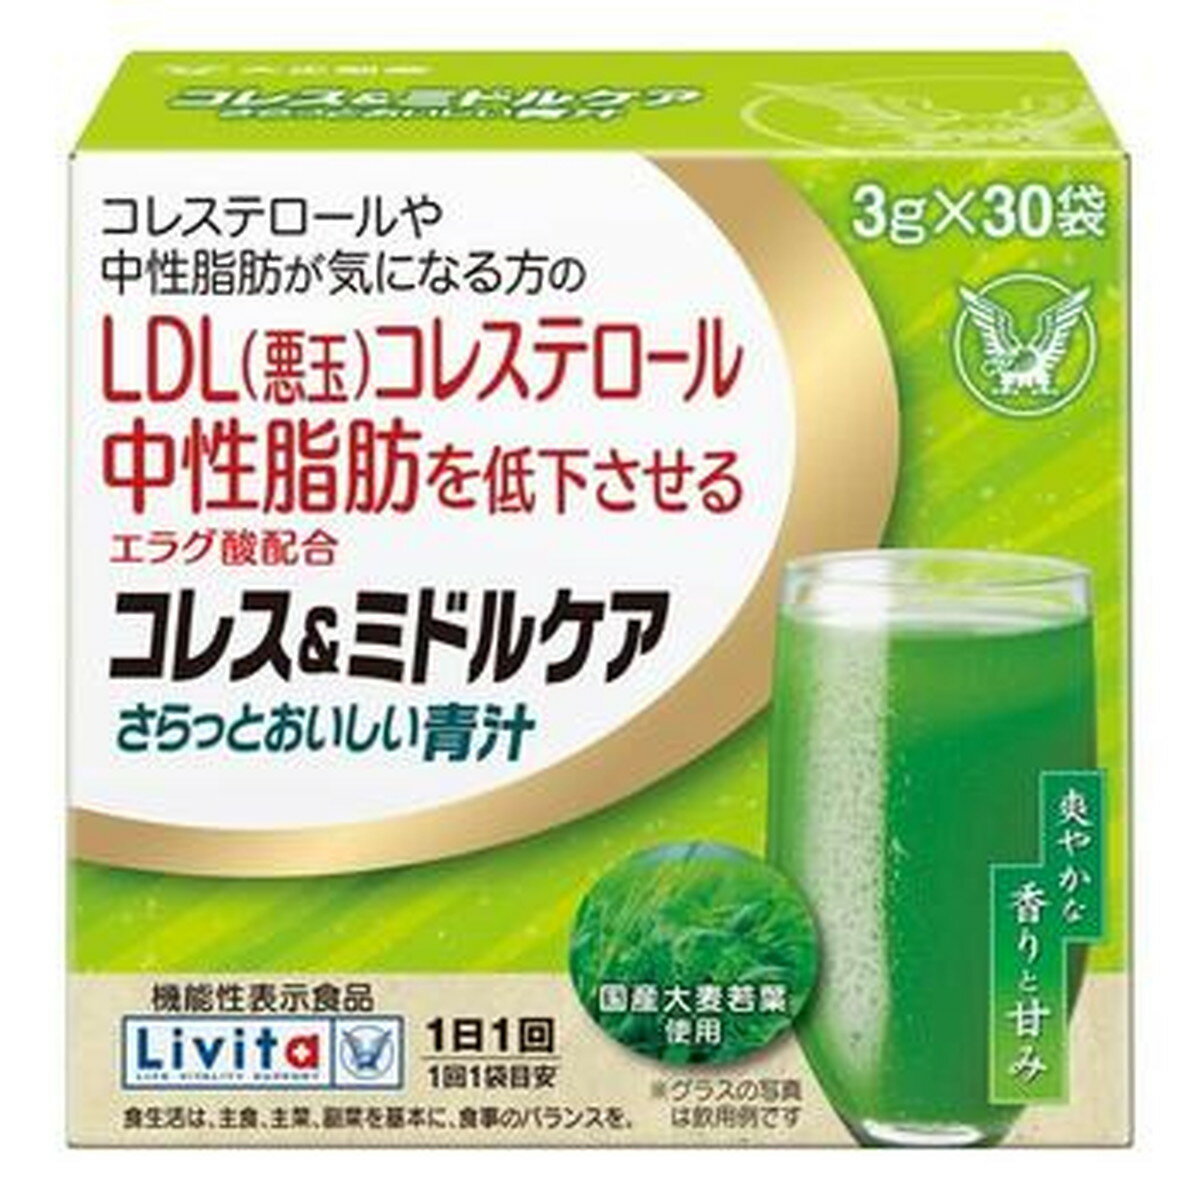 大正製薬 Livita コレス&ミドルケア さらっとおいしい青汁 3g×30袋 機能性表示食品